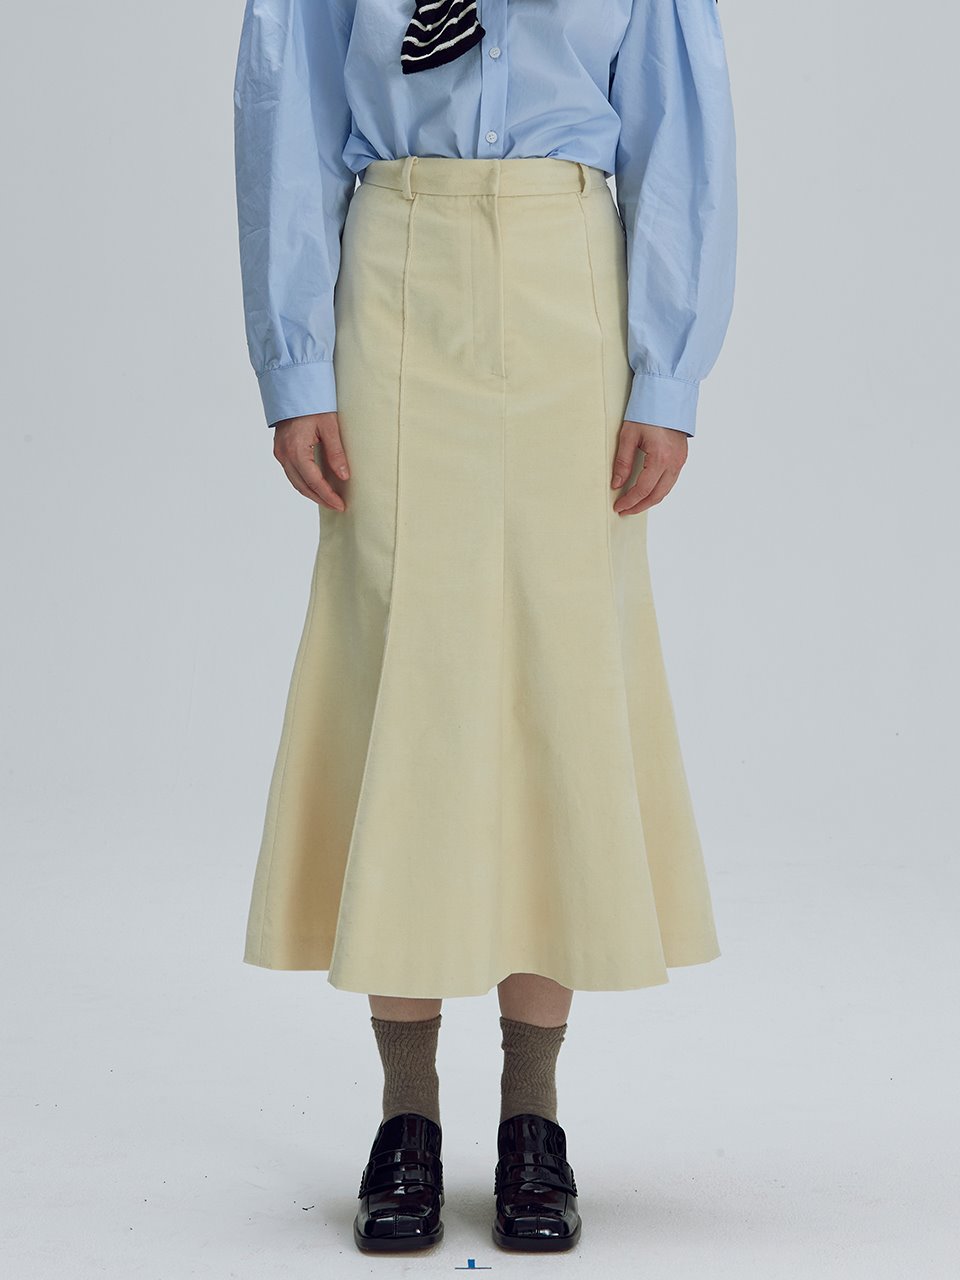 Cotton velvet mermaid skirt - Butter